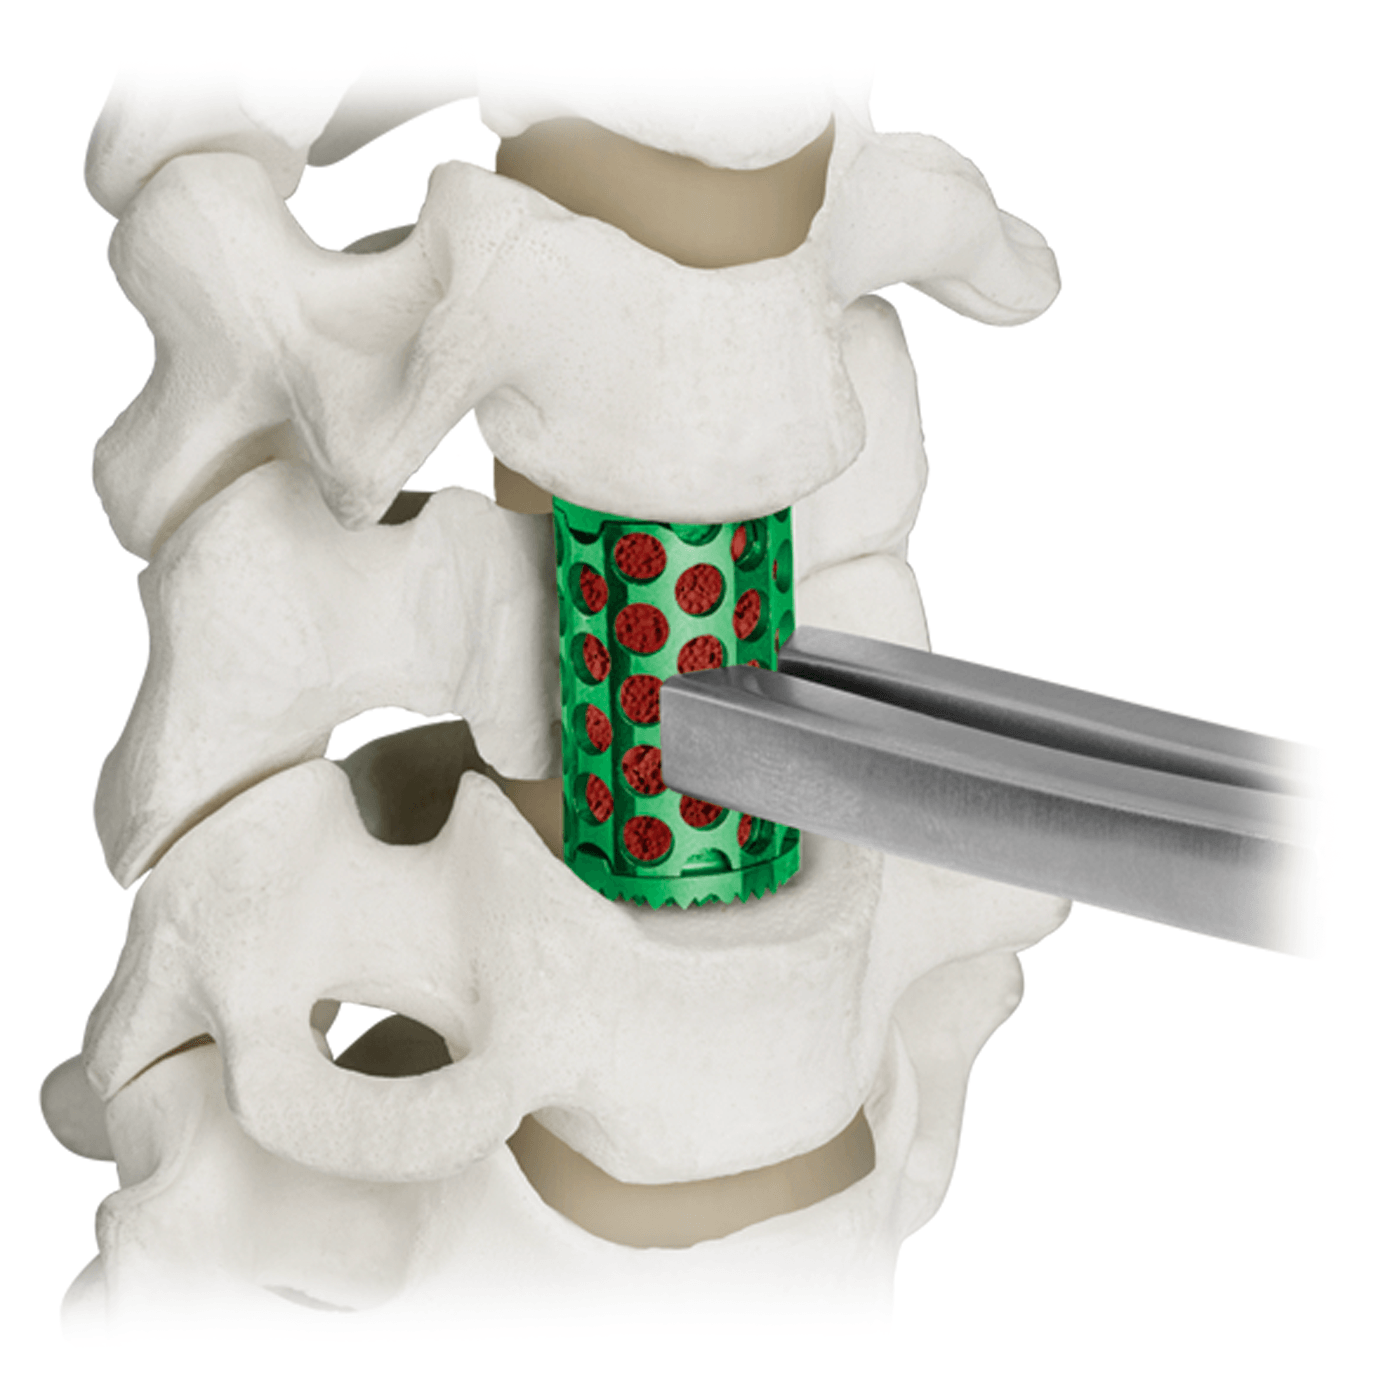 COLOSSEUM™ titanium mesh vertebral body replacement spacer